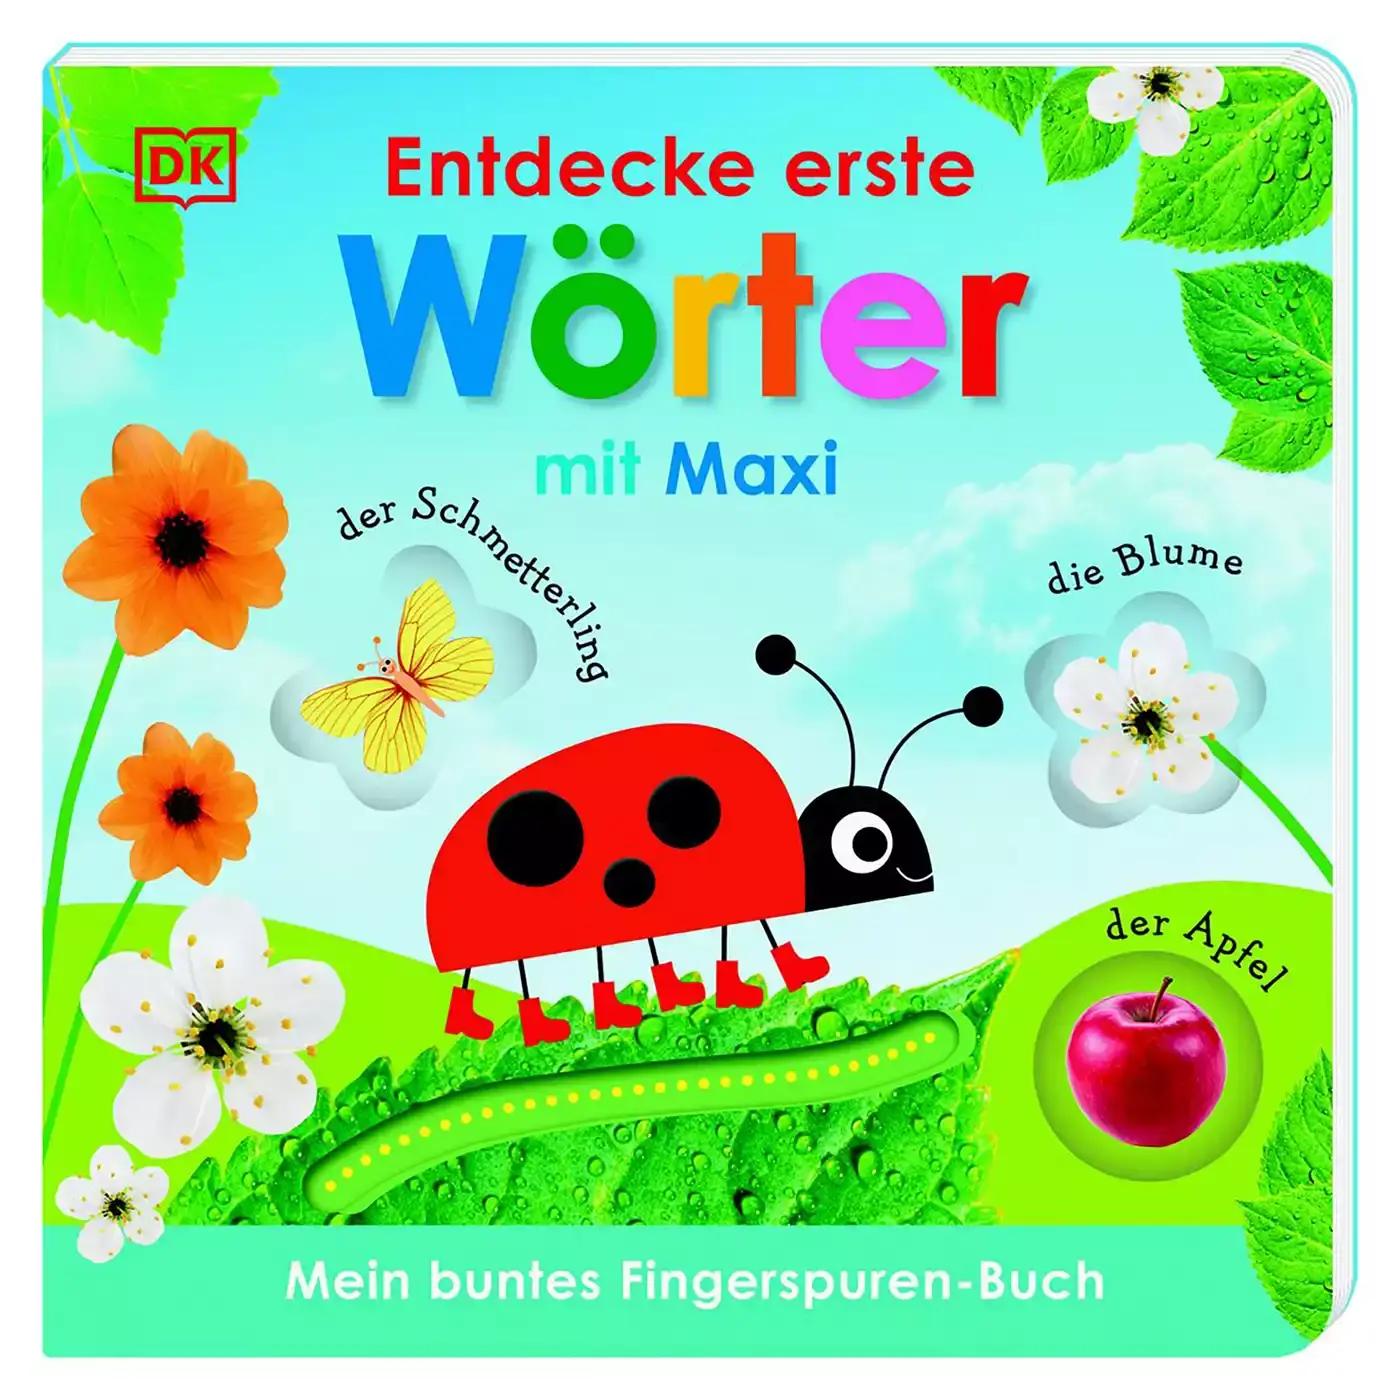 Entdecke erste Wörter mit Maxi DK Mehrfarbig 2000581119007 1